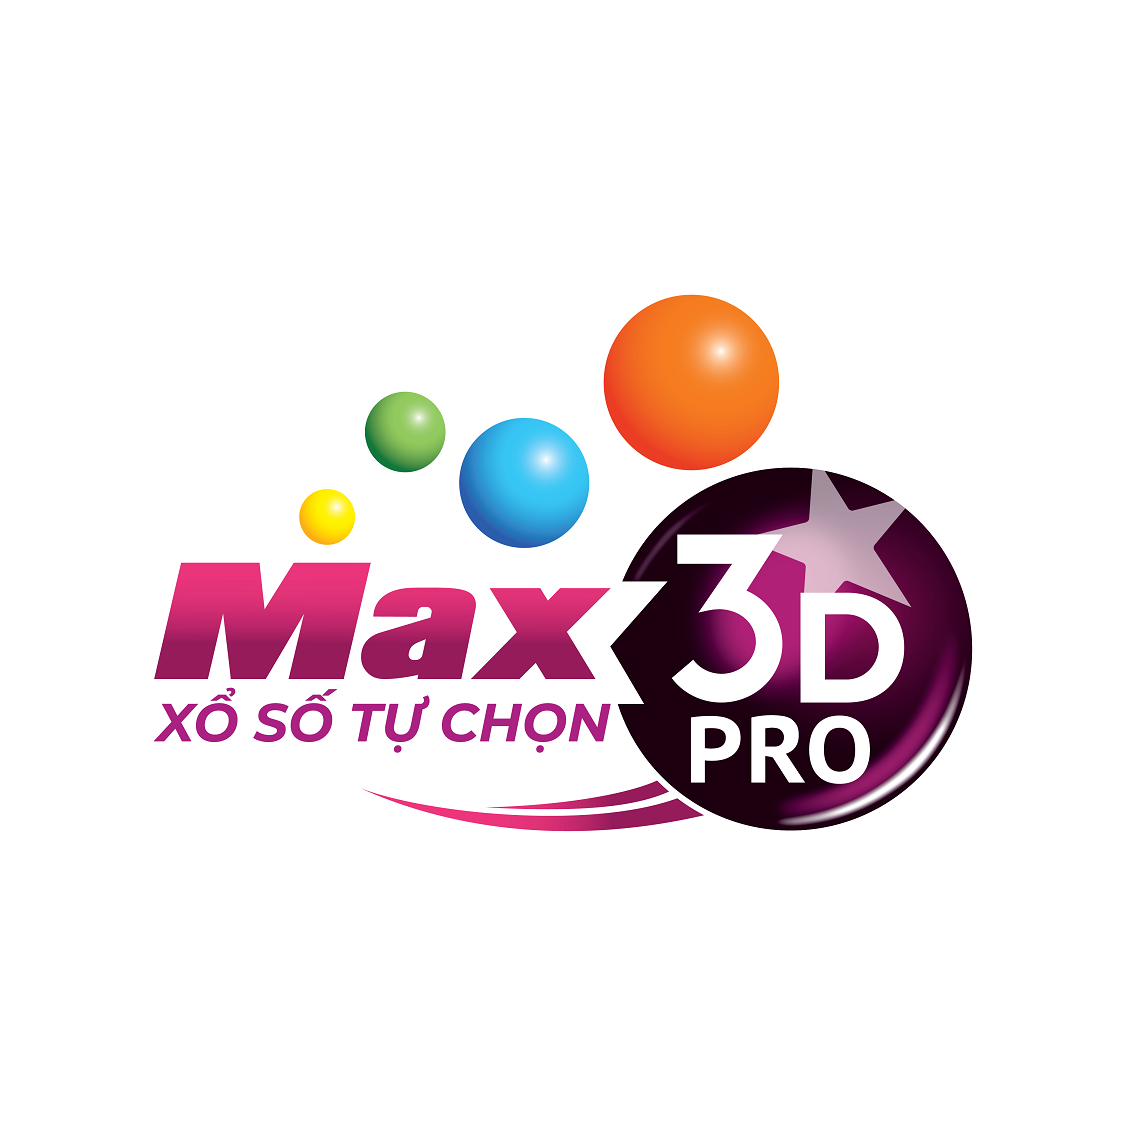 Max3D+ và Max3D Pro khác gì nhau?